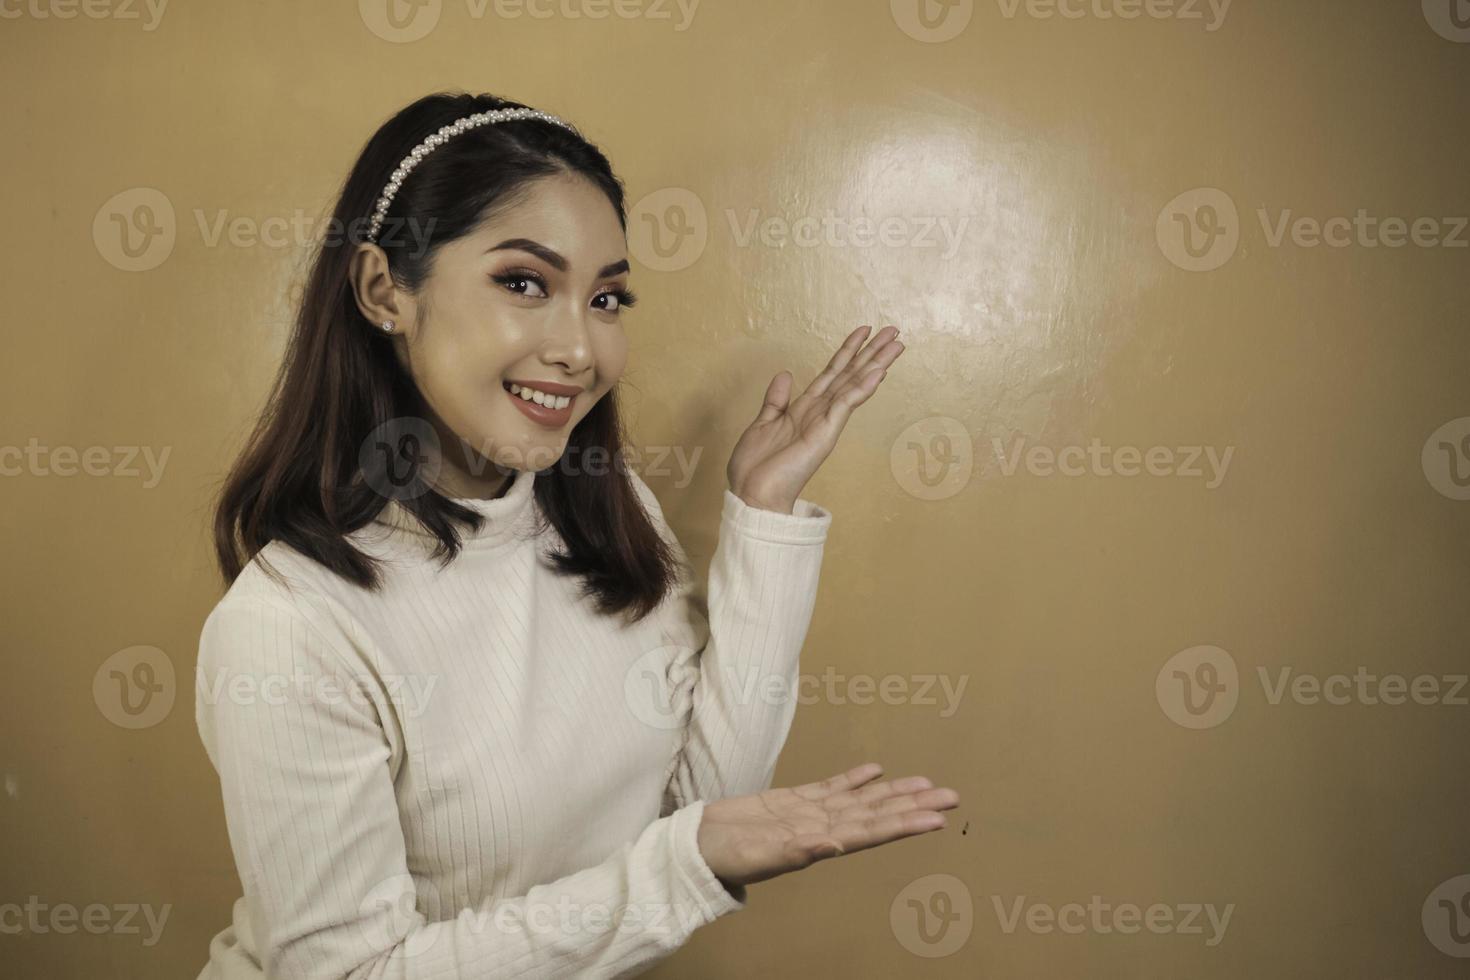 visage heureux et souriant avec le sourire d'une jeune fille asiatique avec un point de main sur un espace vide. photo